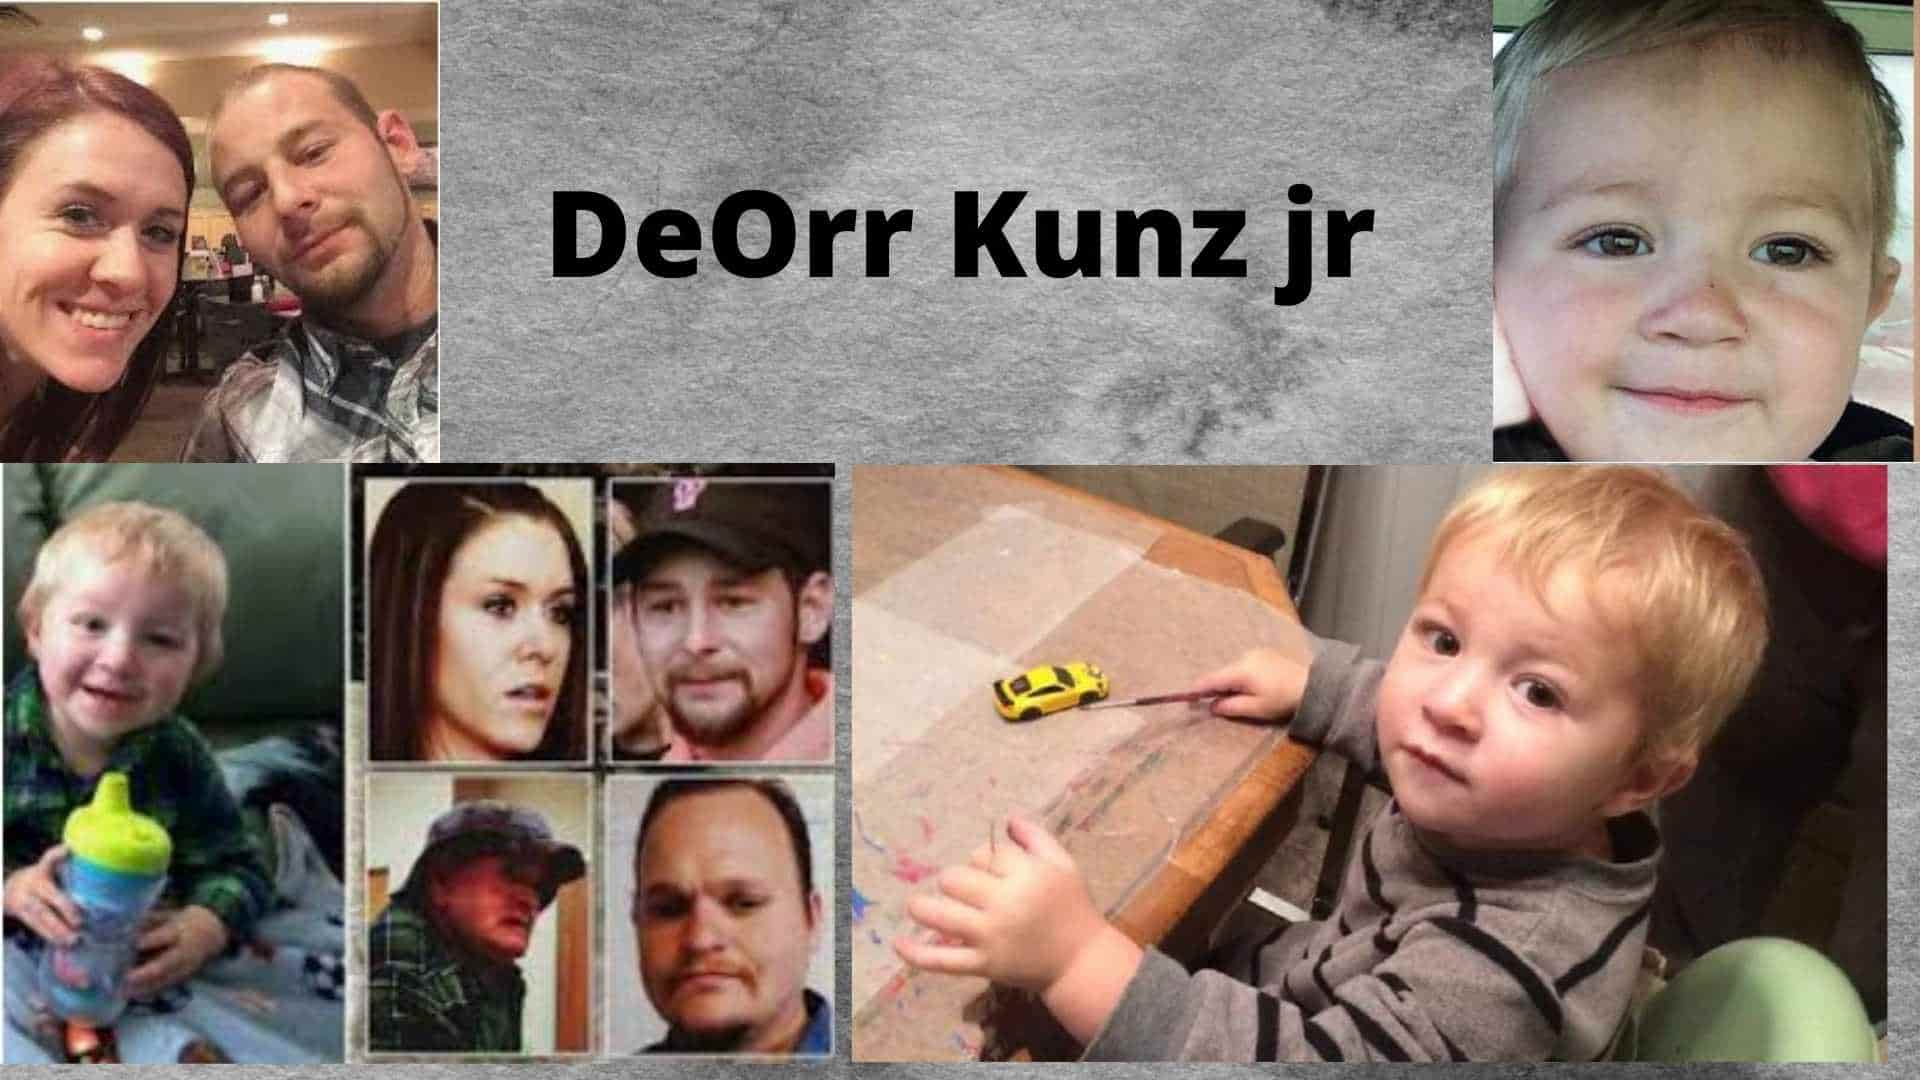 DeOrr Kunz